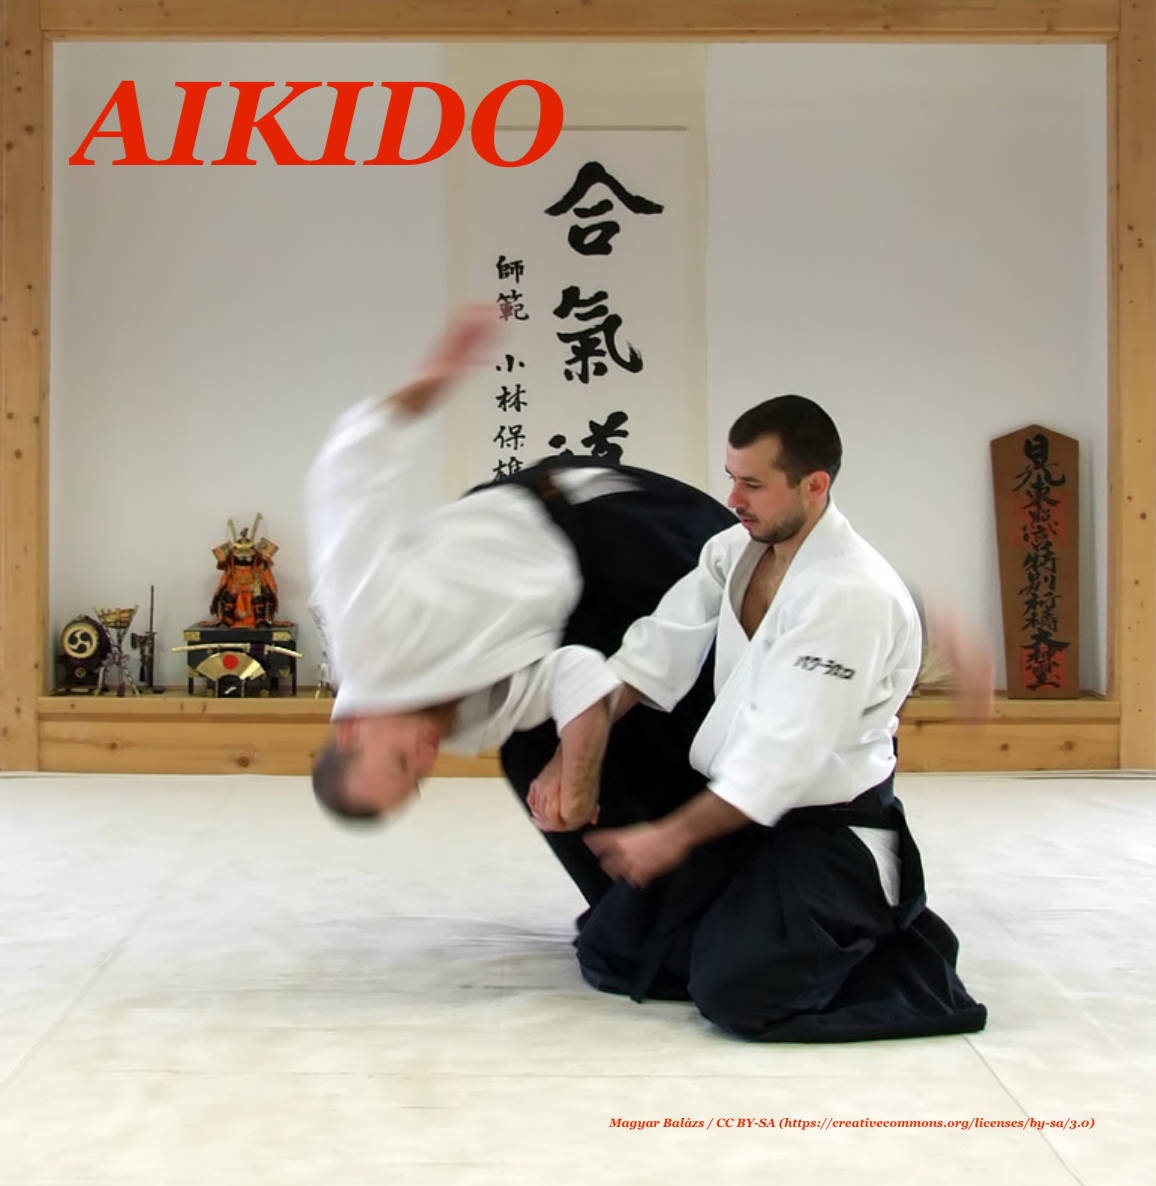 Aiki Nage Aikido Technique Digital Art Wallpaper